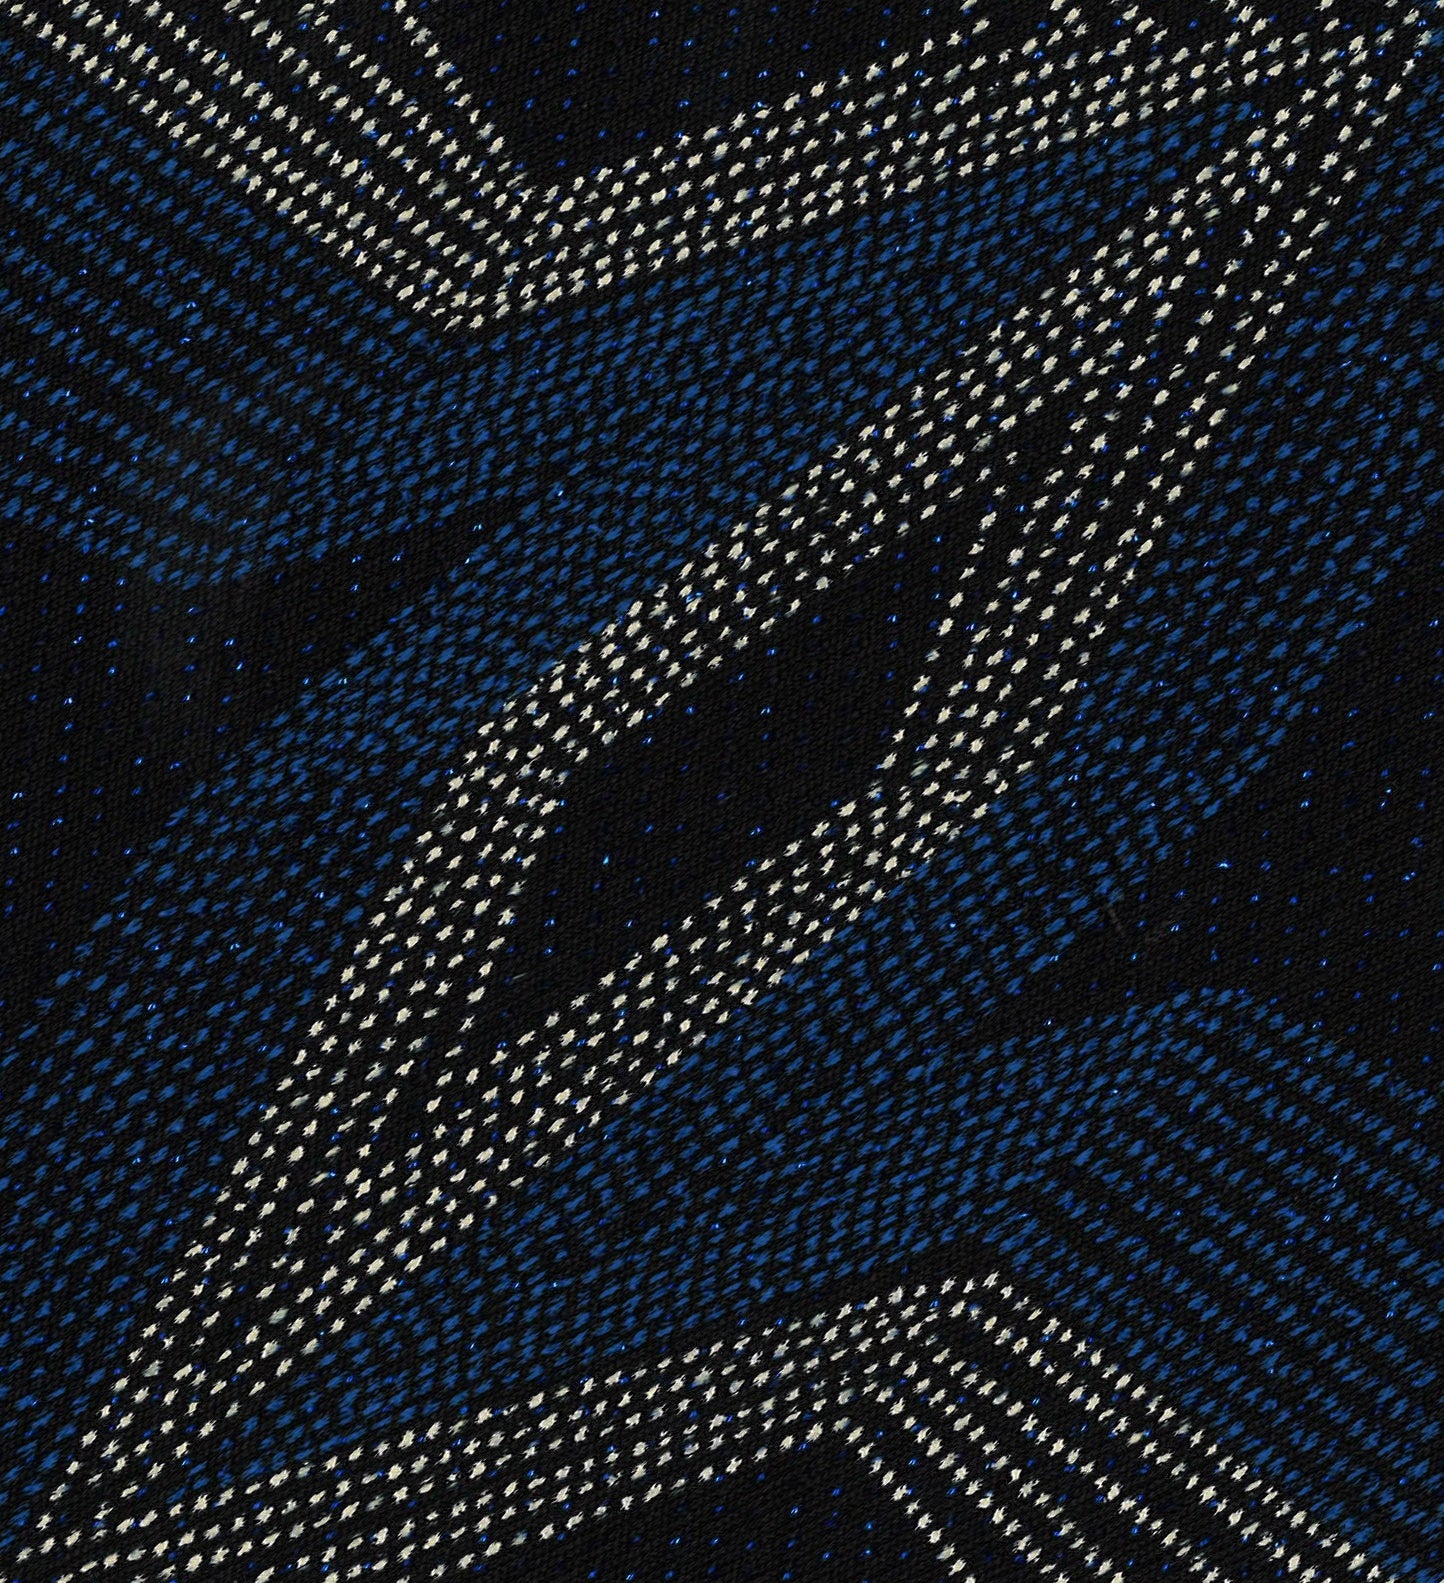 64038-04 Blue Metallic Diamond Pattern Laquer Blend blend blue knit laquer metallic nylon pattern spandex Metallic - knit fabric - woven fabric - fabric company - fabric wholesale - fabric b2b - fabric factory - high quality fabric - hong kong fabric - fabric hk - acetate fabric - cotton fabric - linen fabric - metallic fabric - nylon fabric - polyester fabric - spandex fabric - chun wing hing - cwh hk - fabric worldwide ship - 針織布 - 梳織布 - 布料公司- 布料批發 - 香港布料 - 秦榮興